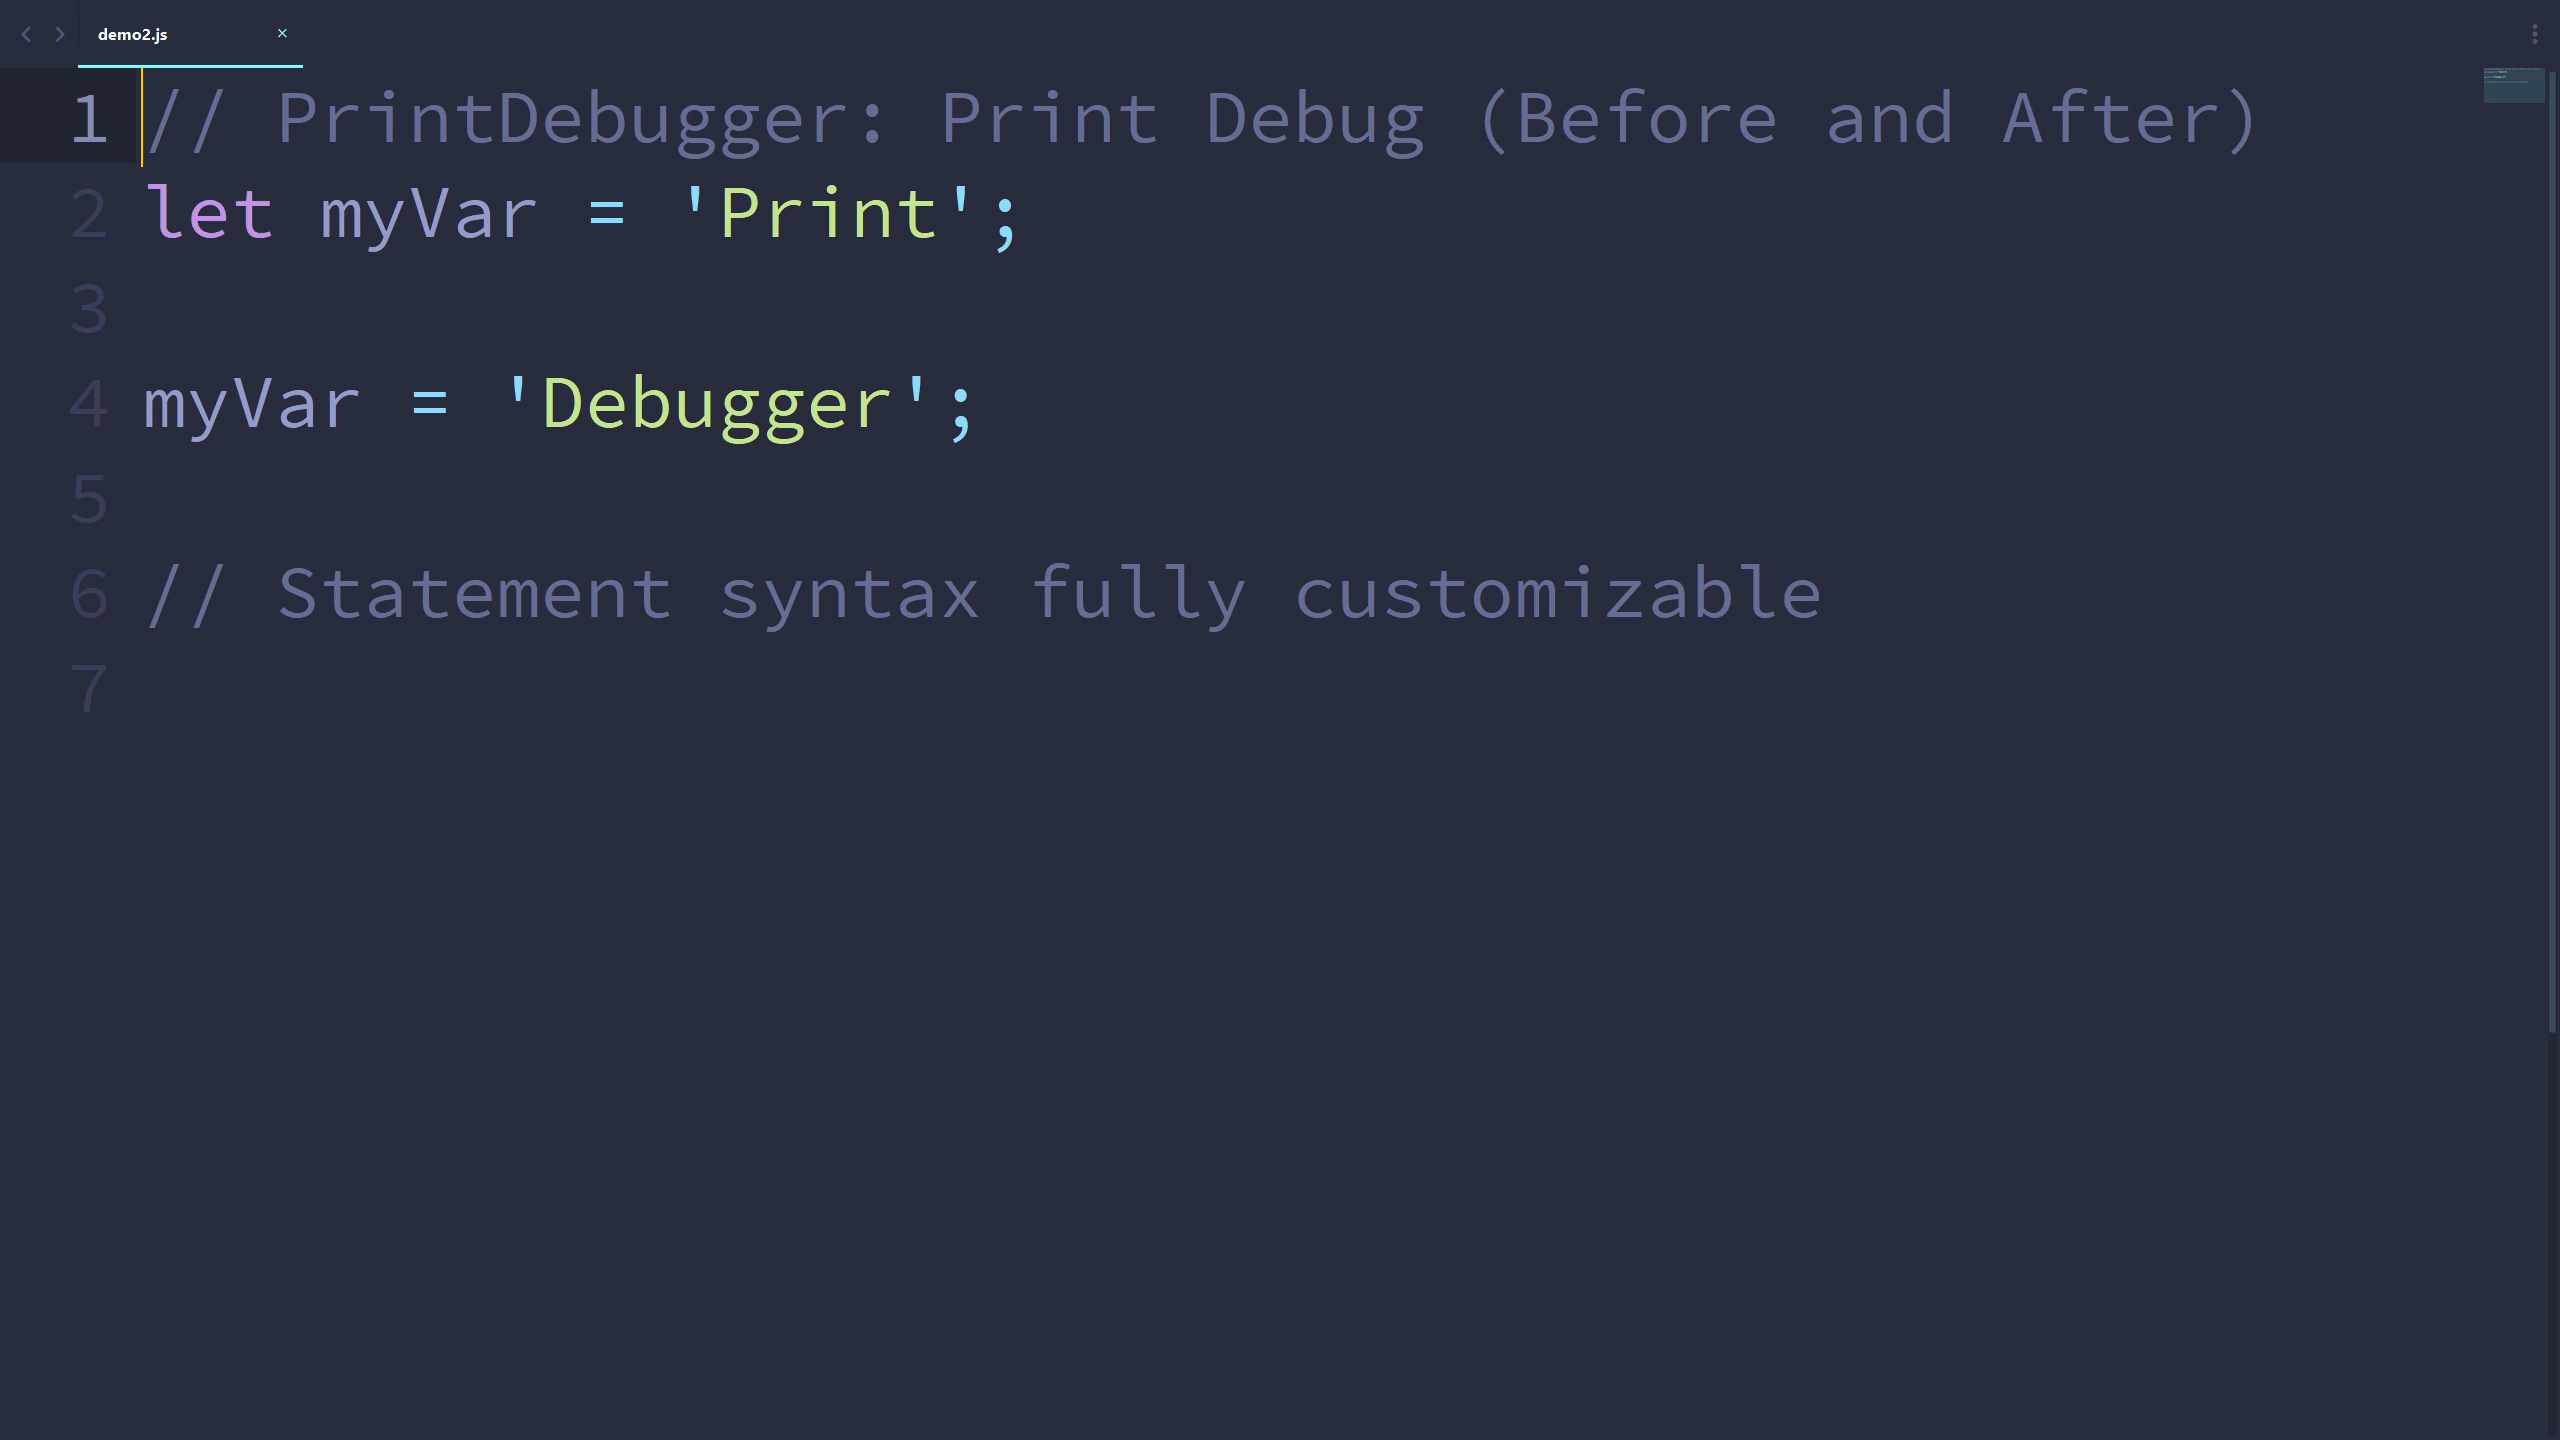 PrintDebugger: Print Debug (Before and After)